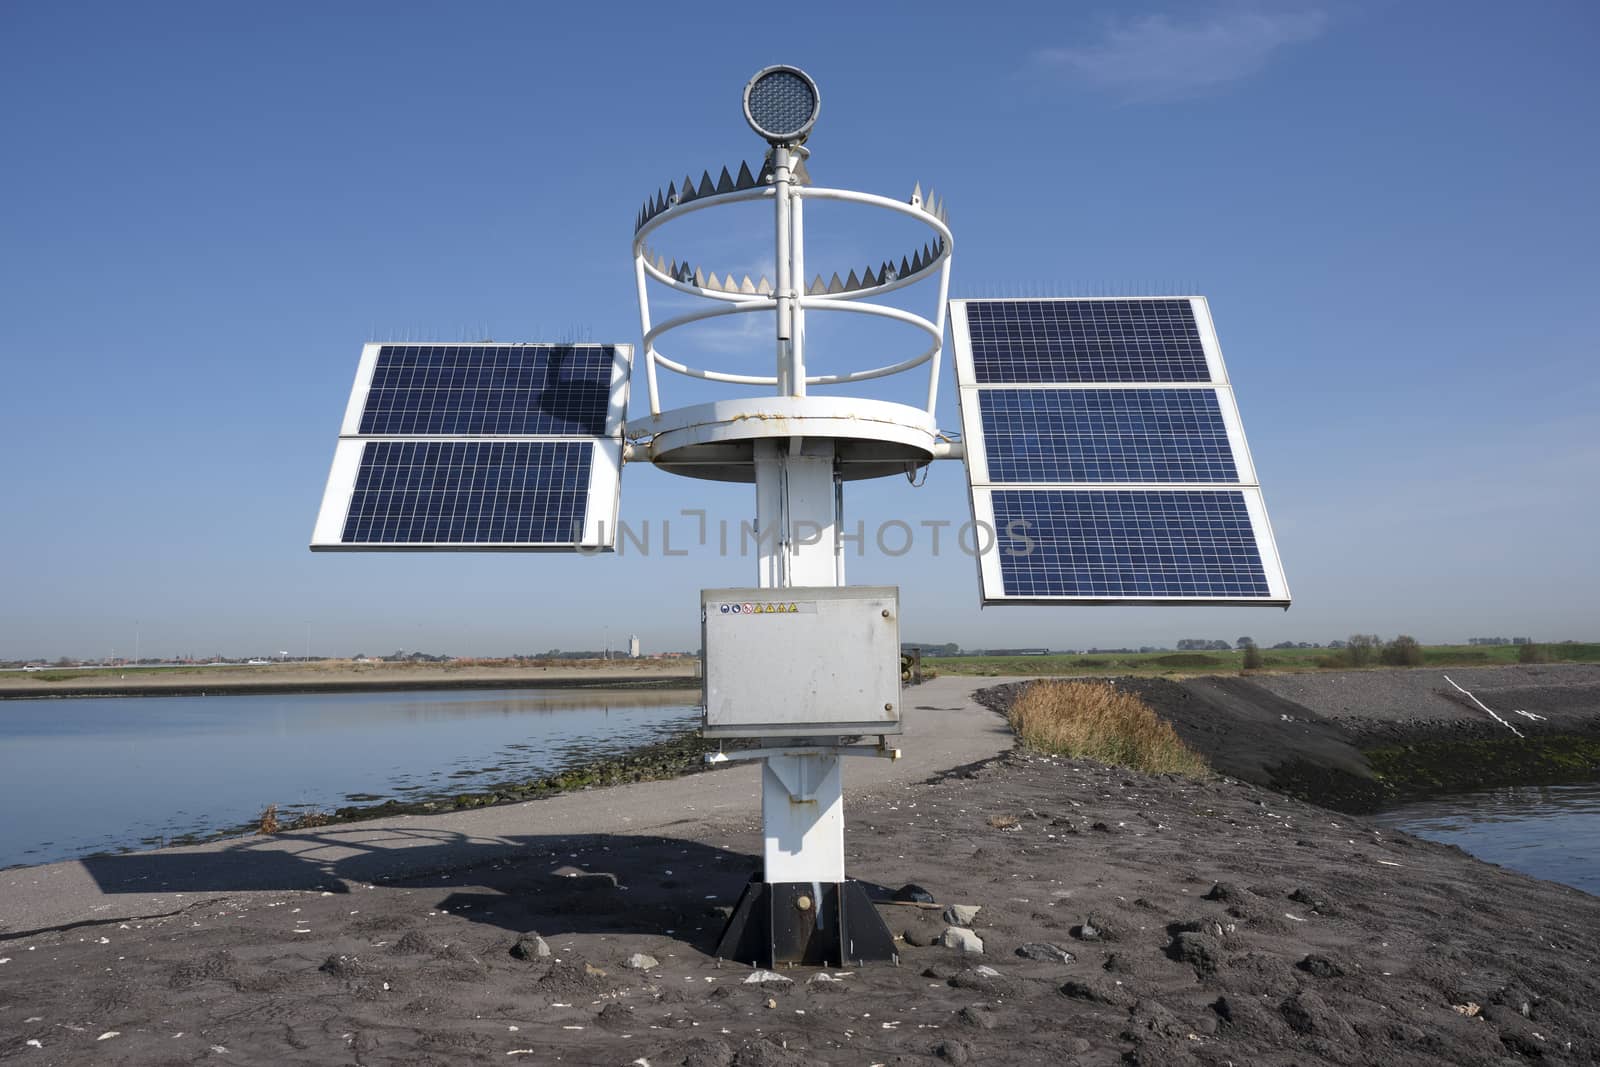 solar panel for lake harbor lighthouse energy, blue sky by Tjeerdkruse